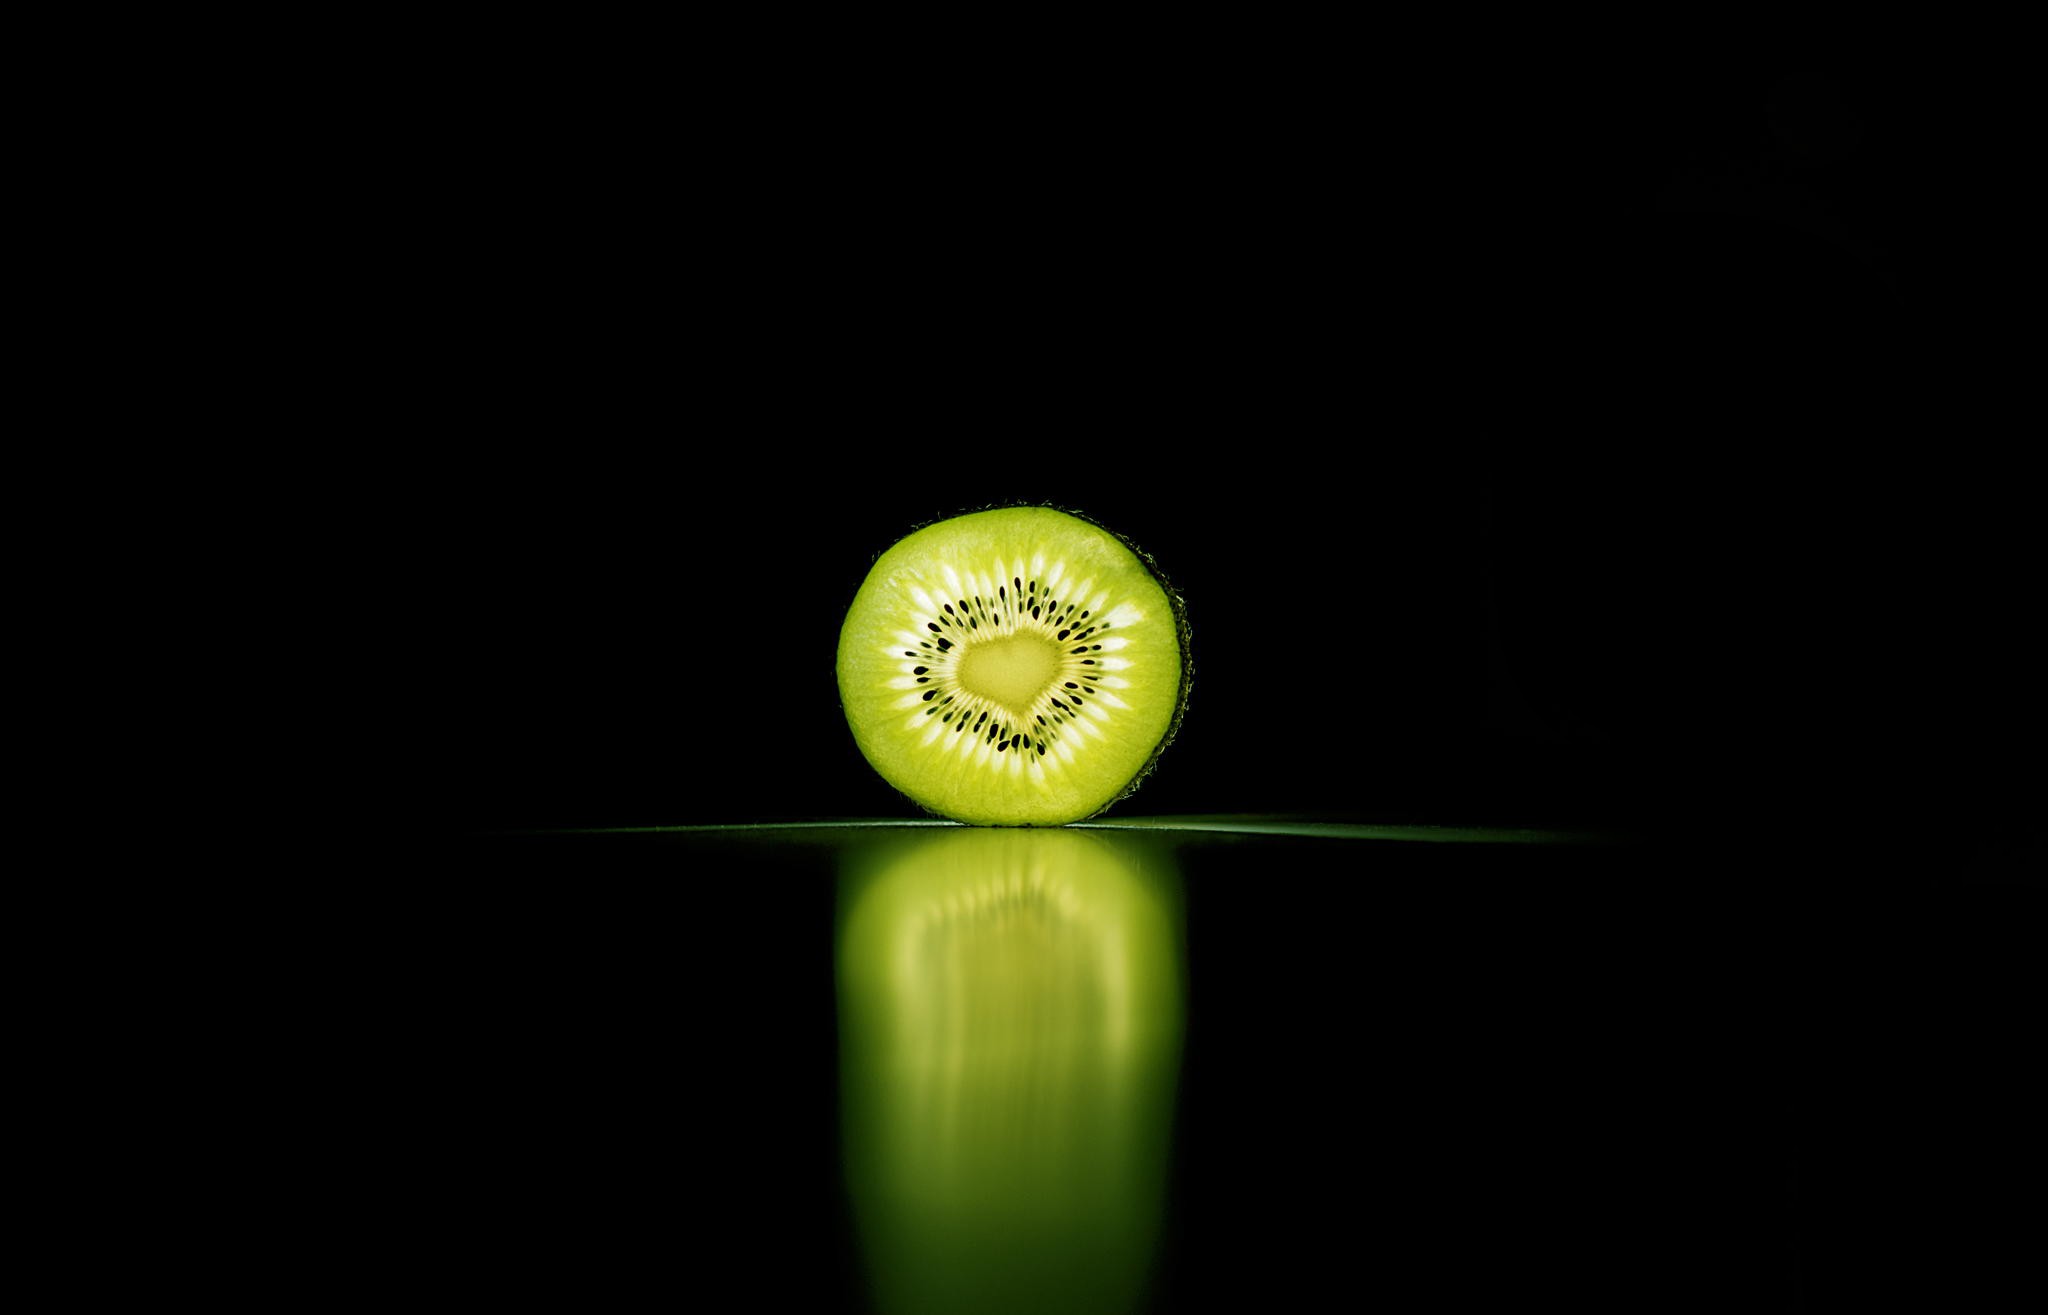 General 2048x1315 kiwi (fruit) food reflection green fruit black background simple background minimalism